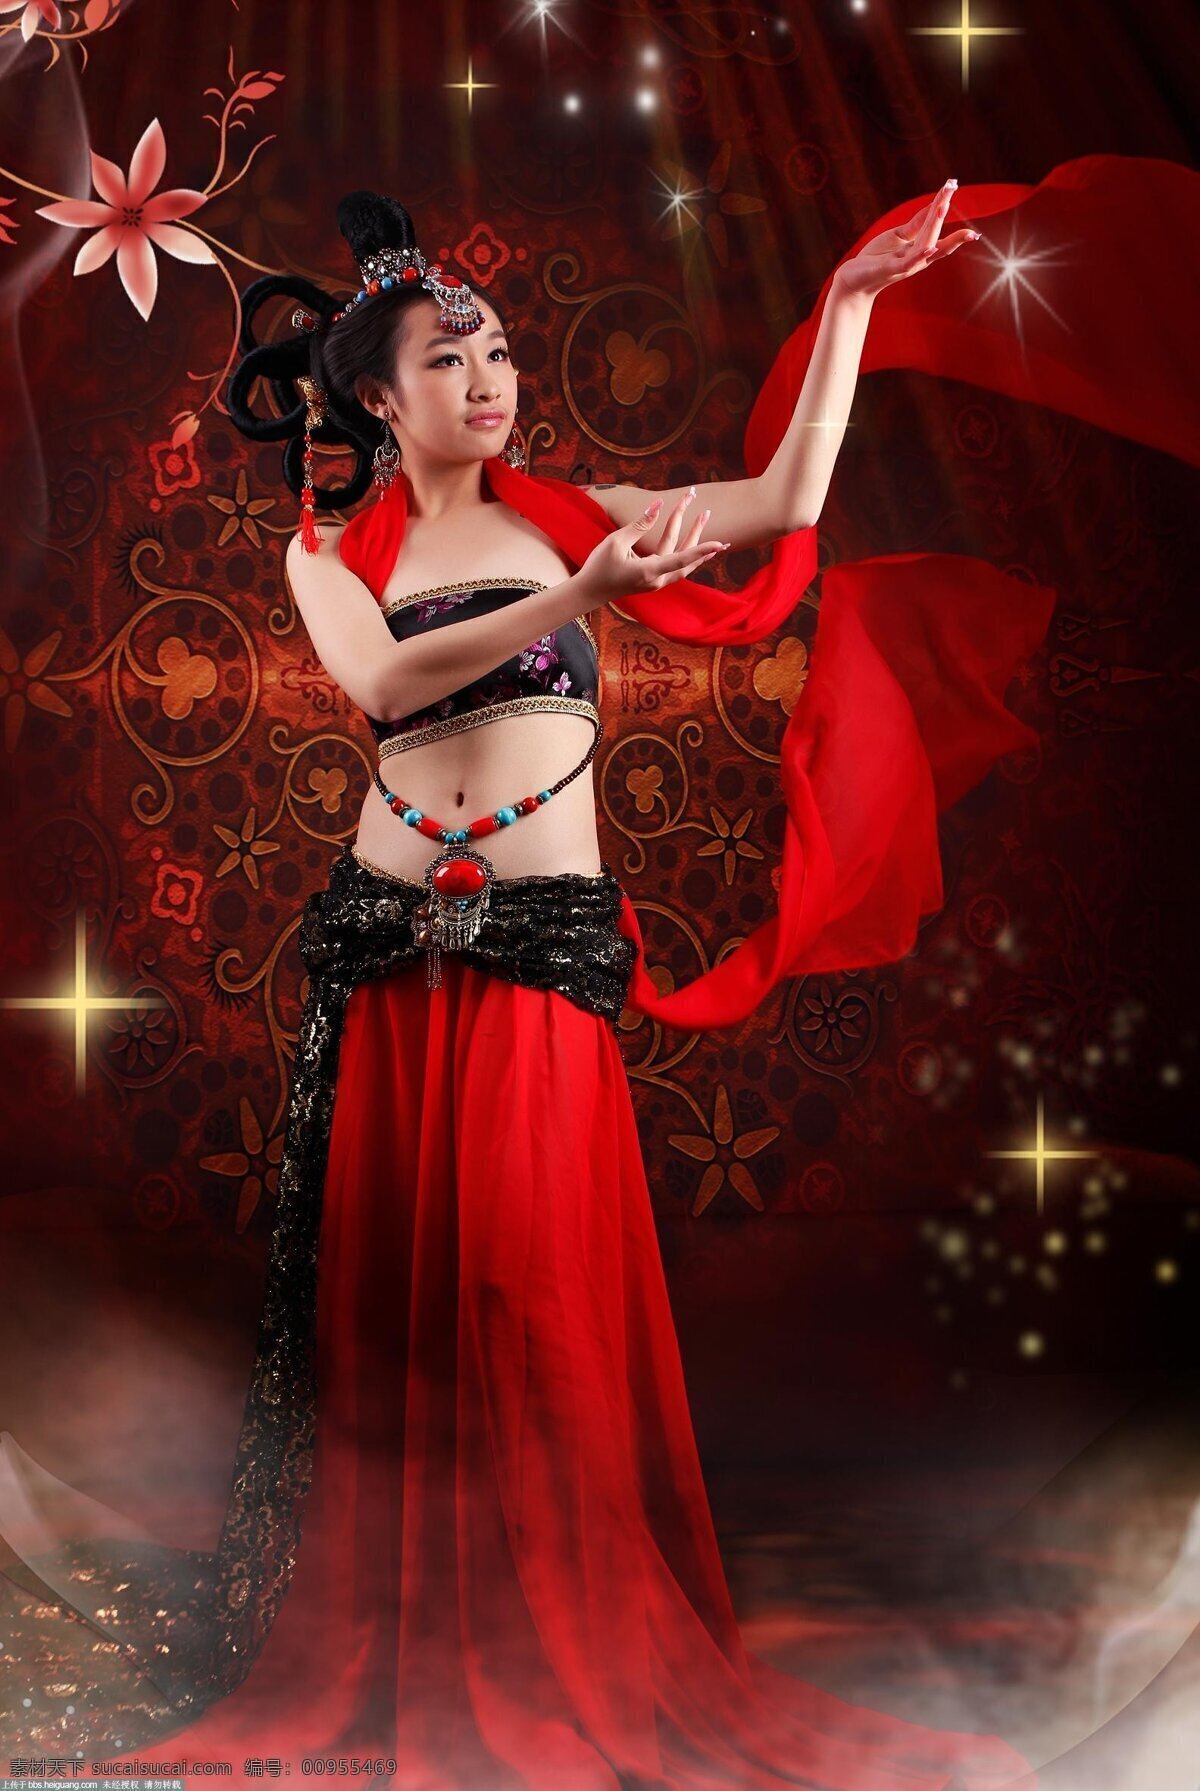 中国古典美女 古典美女 红色丝绸 古风美女 复古美女 性感 人物写真 人物图库